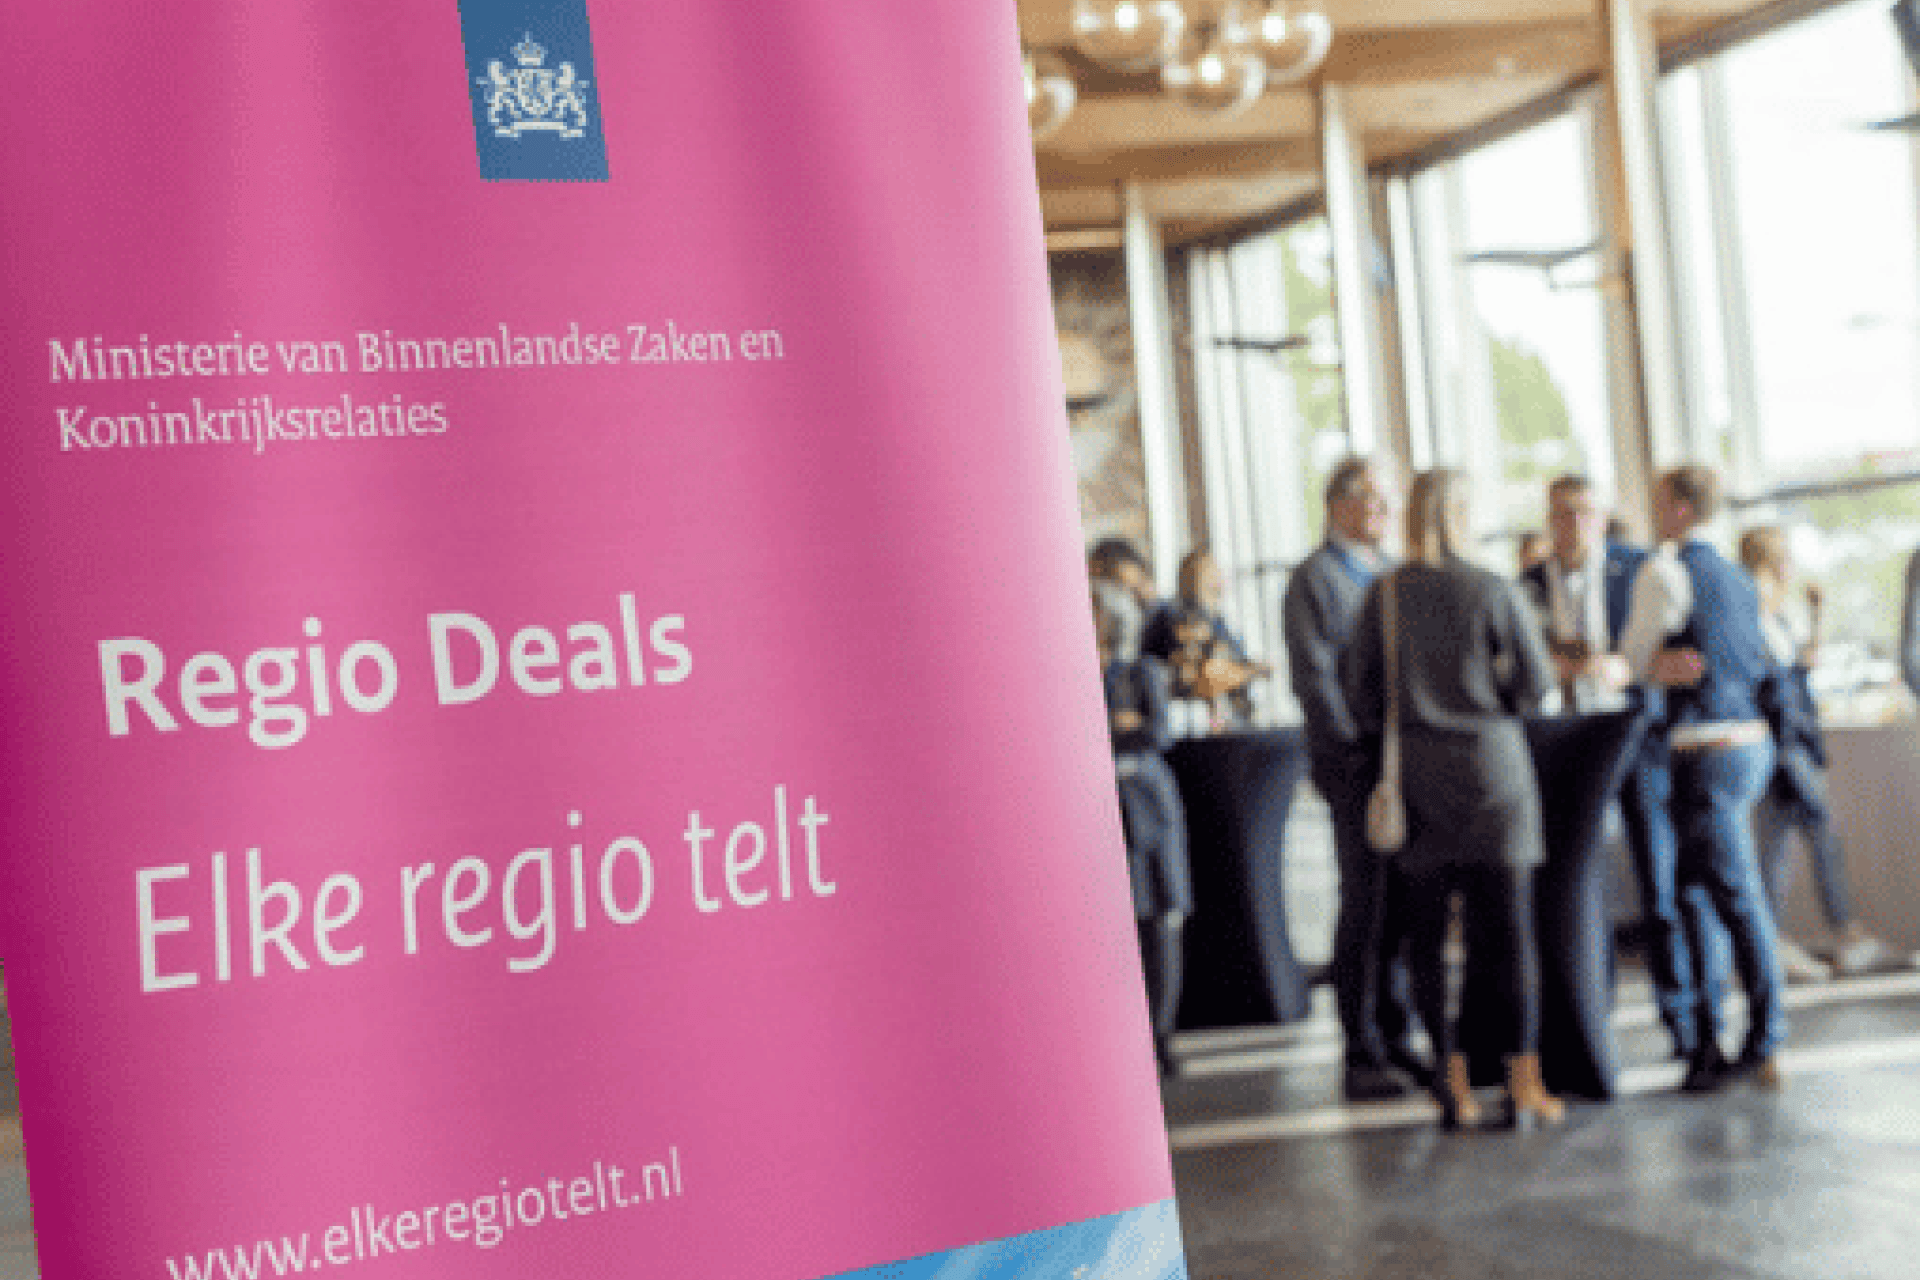 Regio deals